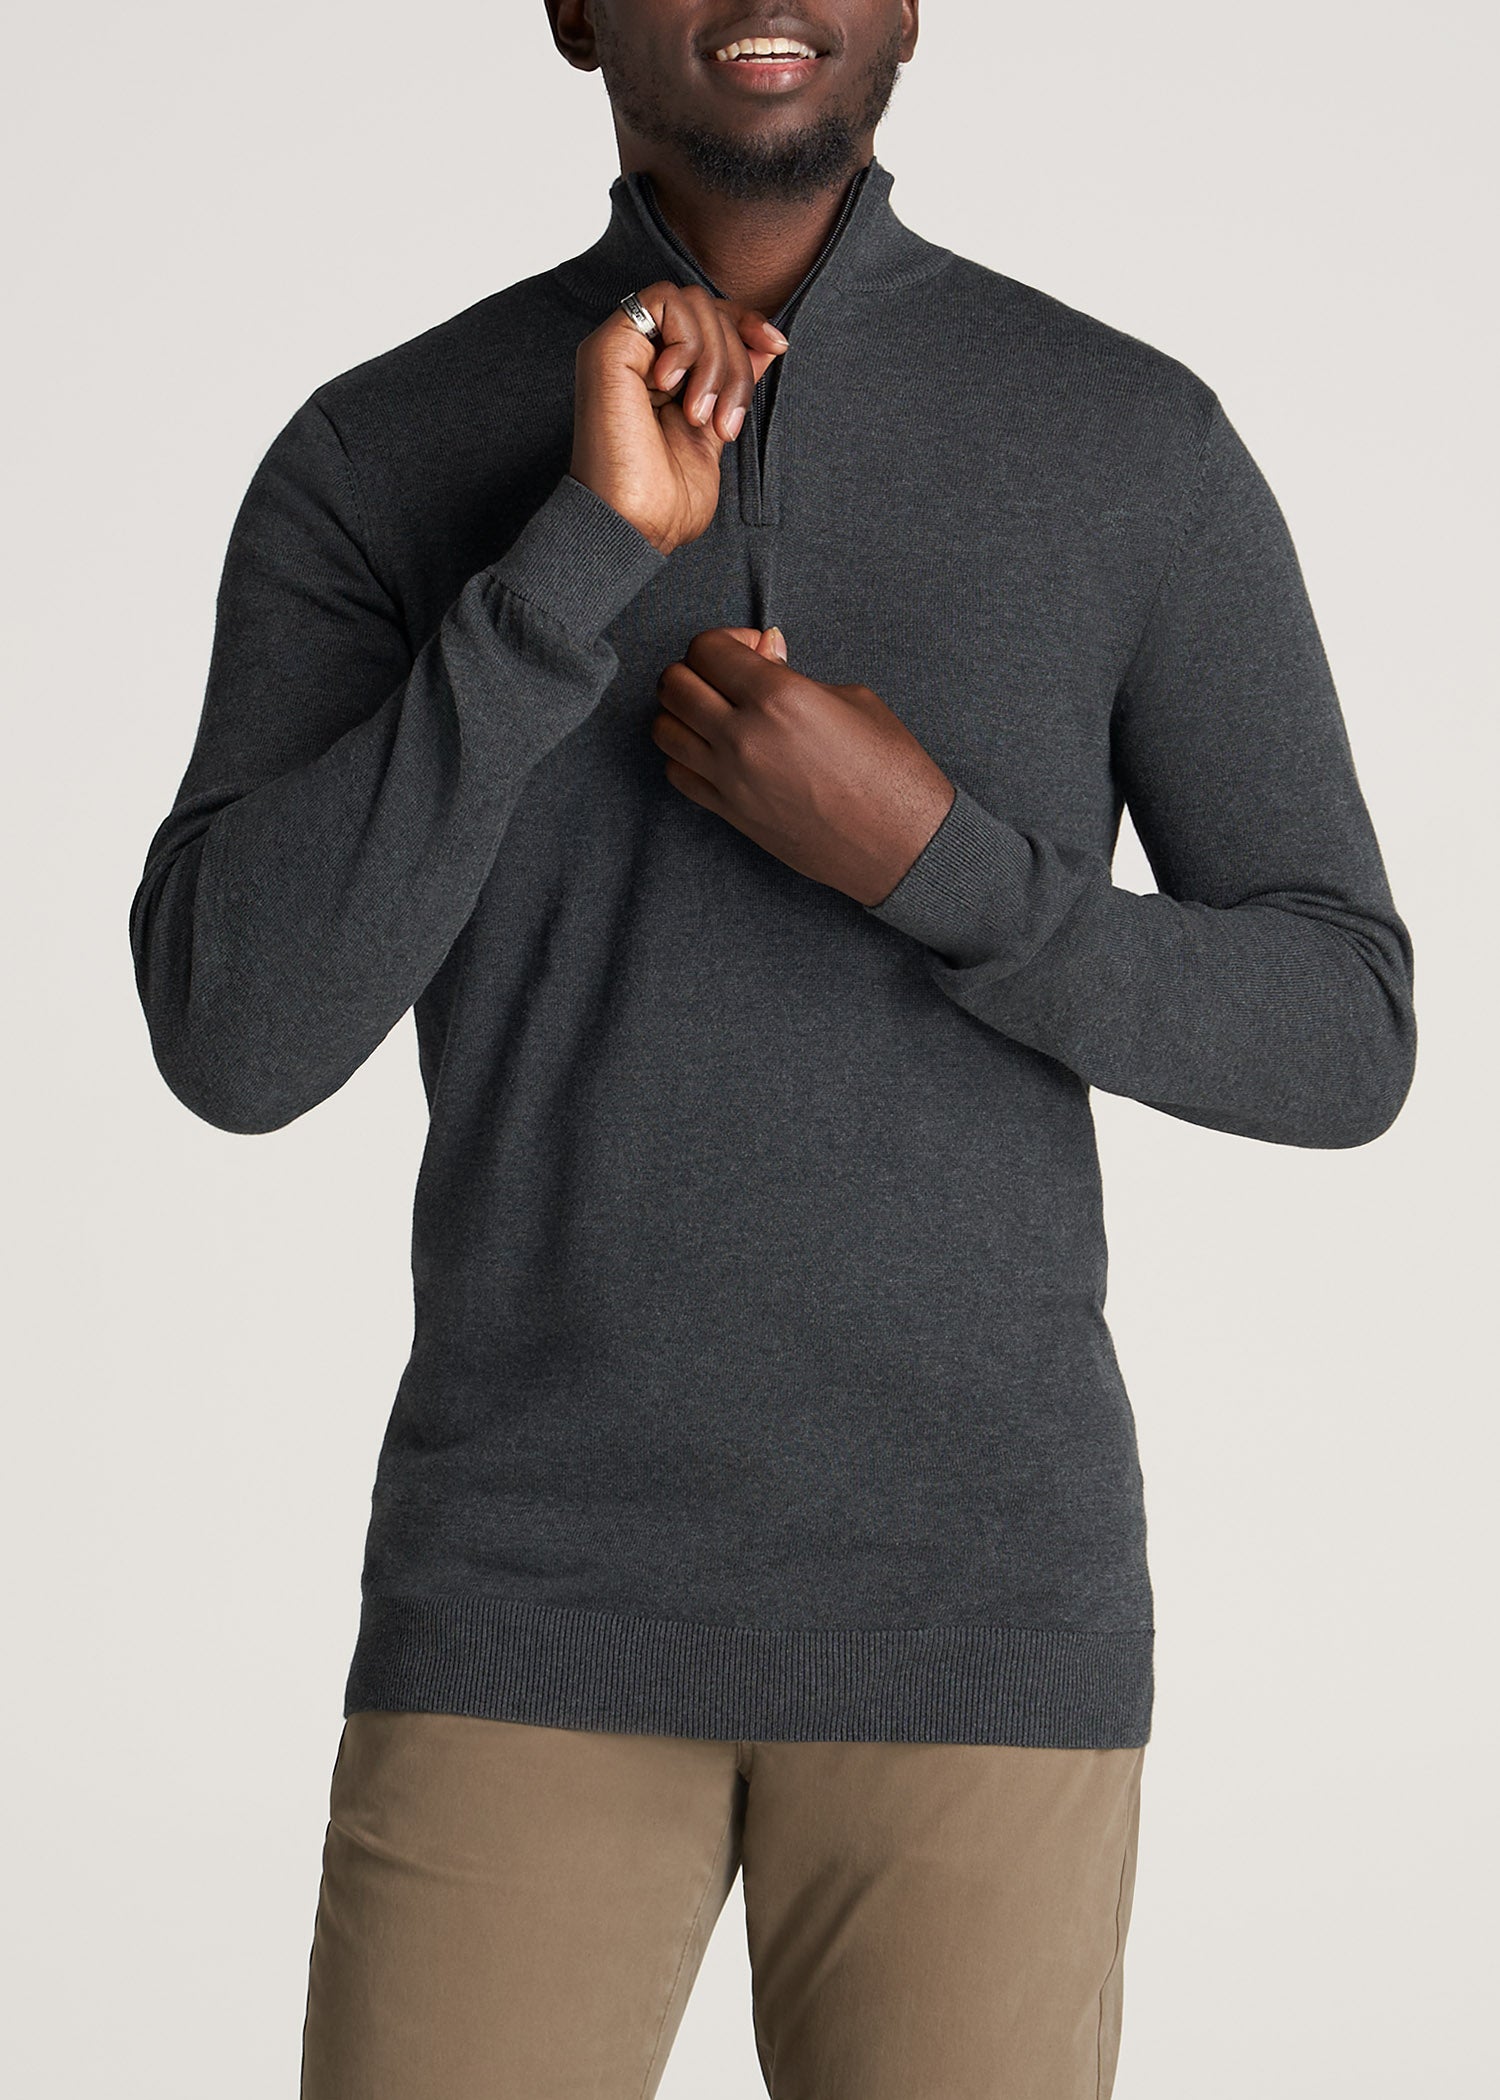 Cashmere Zipper Sweater - Women - Ready-to-Wear